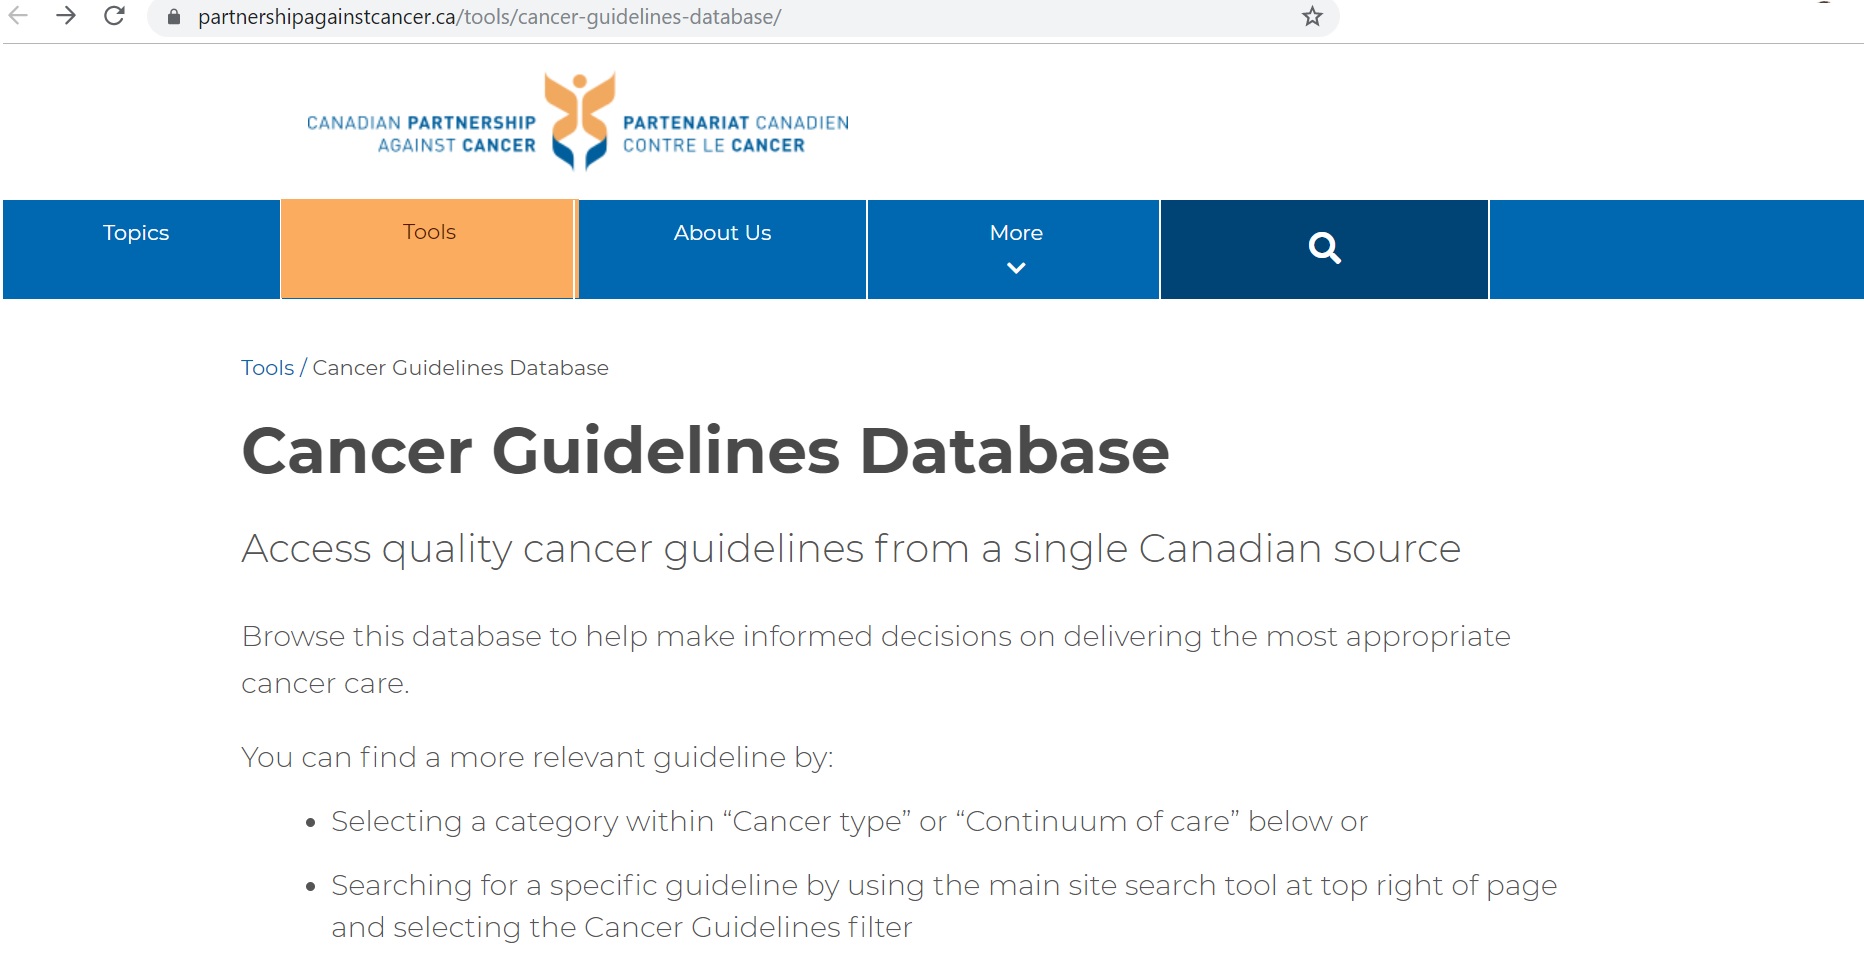 Cancer Guidelines Database